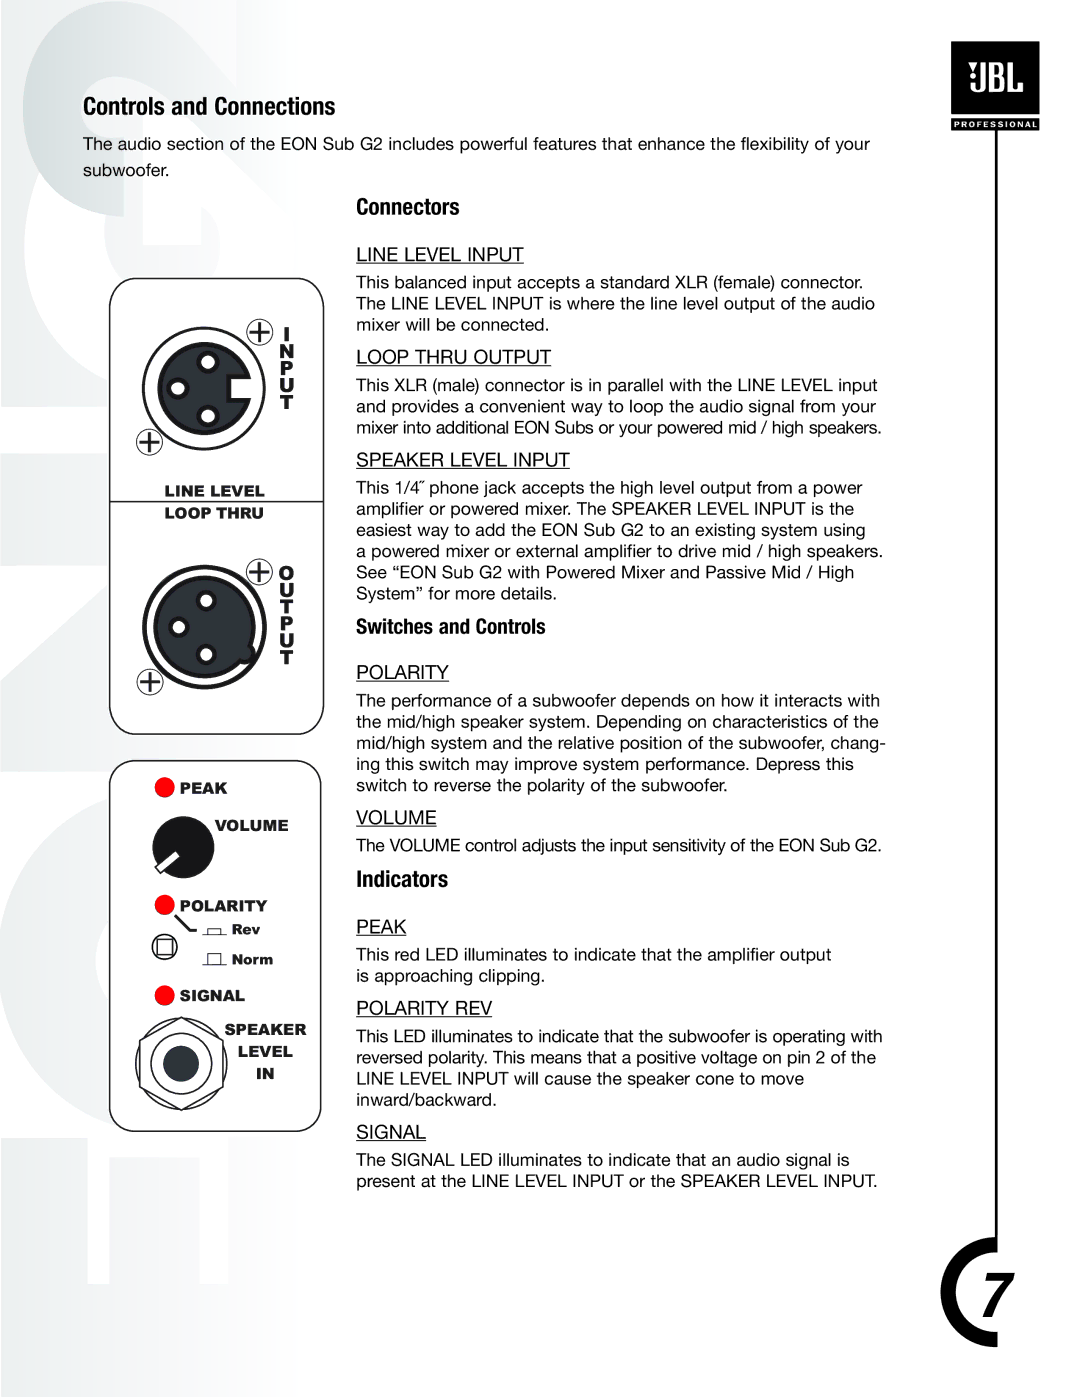 JBL EON Sub G2 manual Controls and Connections, Connectors, Indicators 